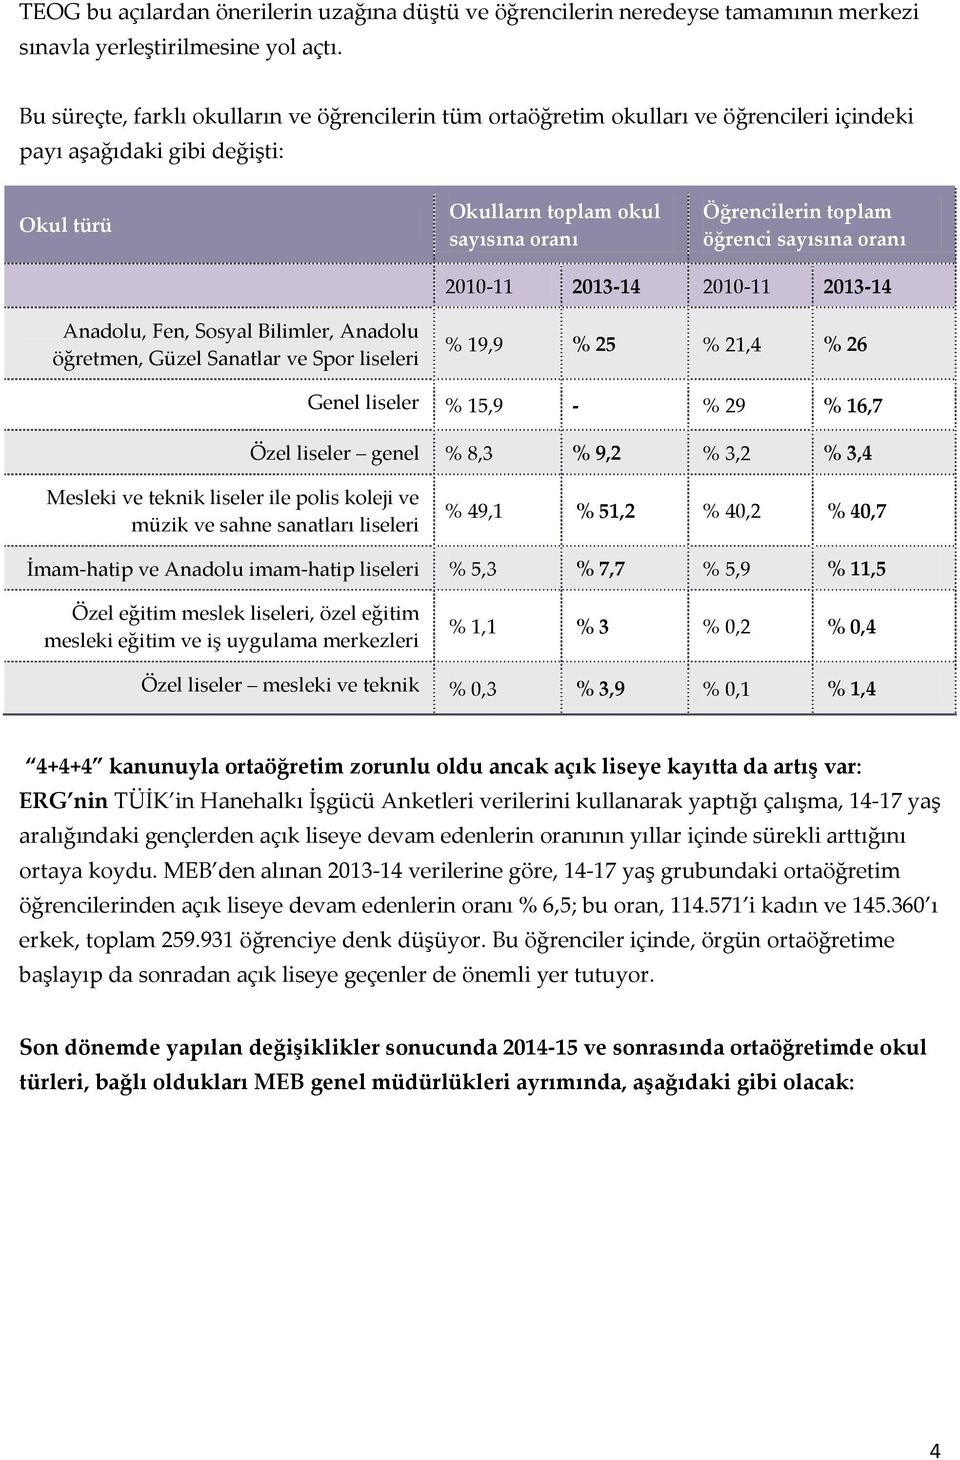 sayısına oranı 2010-11 2013-14 2010-11 2013-14 Anadolu, Fen, Sosyal Bilimler, Anadolu öğretmen, Güzel Sanatlar ve Spor liseleri % 19,9 % 25 % 21,4 % 26 Genel liseler % 15,9 - % 29 % 16,7 Özel liseler